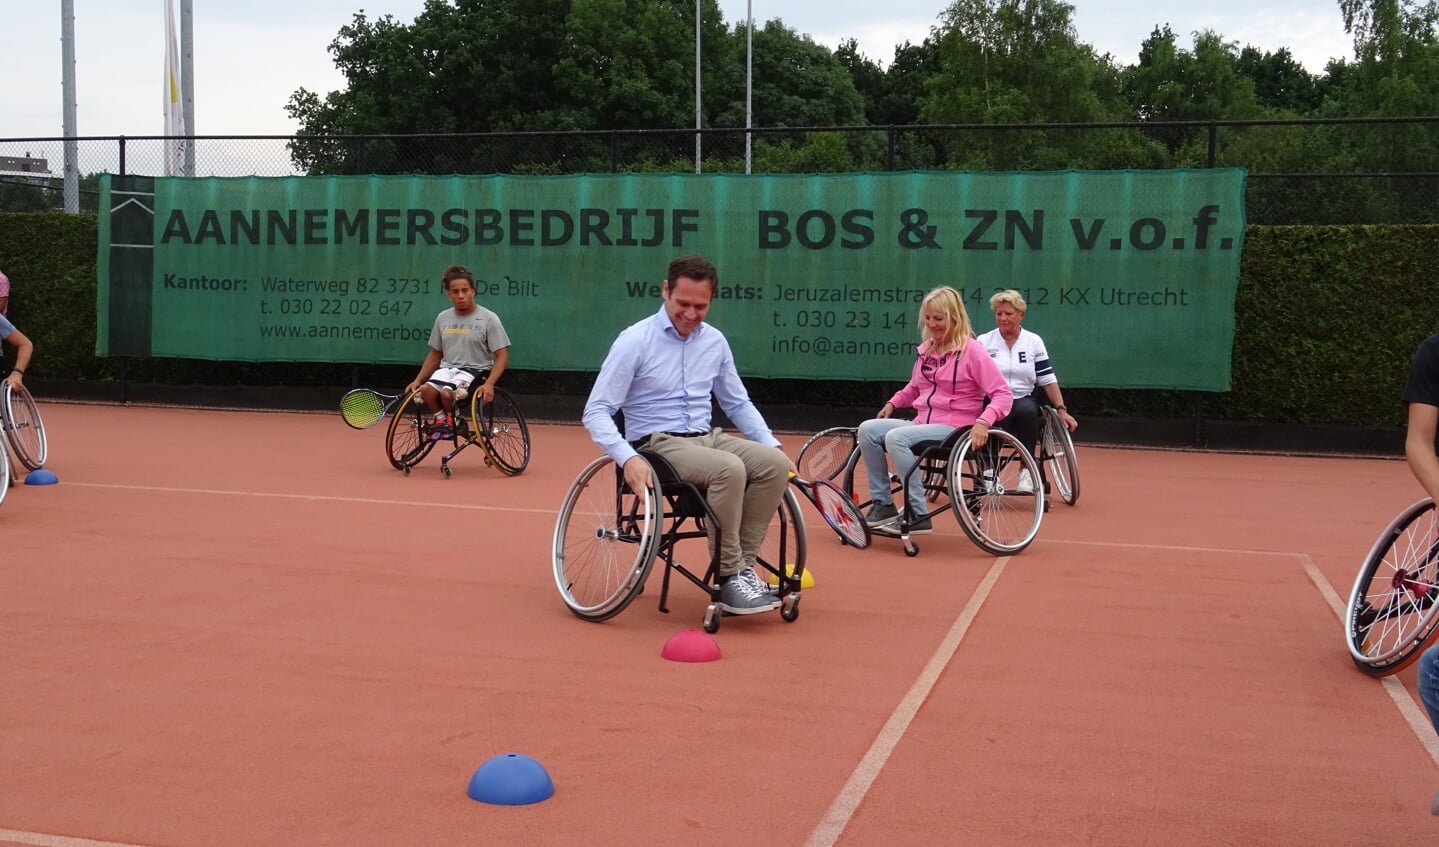 Voorafgaand aan de wedstrijd leggen burgemeester Sjoerd Potters, Petra van der Waals en Marleen van der Waals onder het toeziend oog van Carlos Anker een slalom af om de rolstoel onder controle te krijgen.